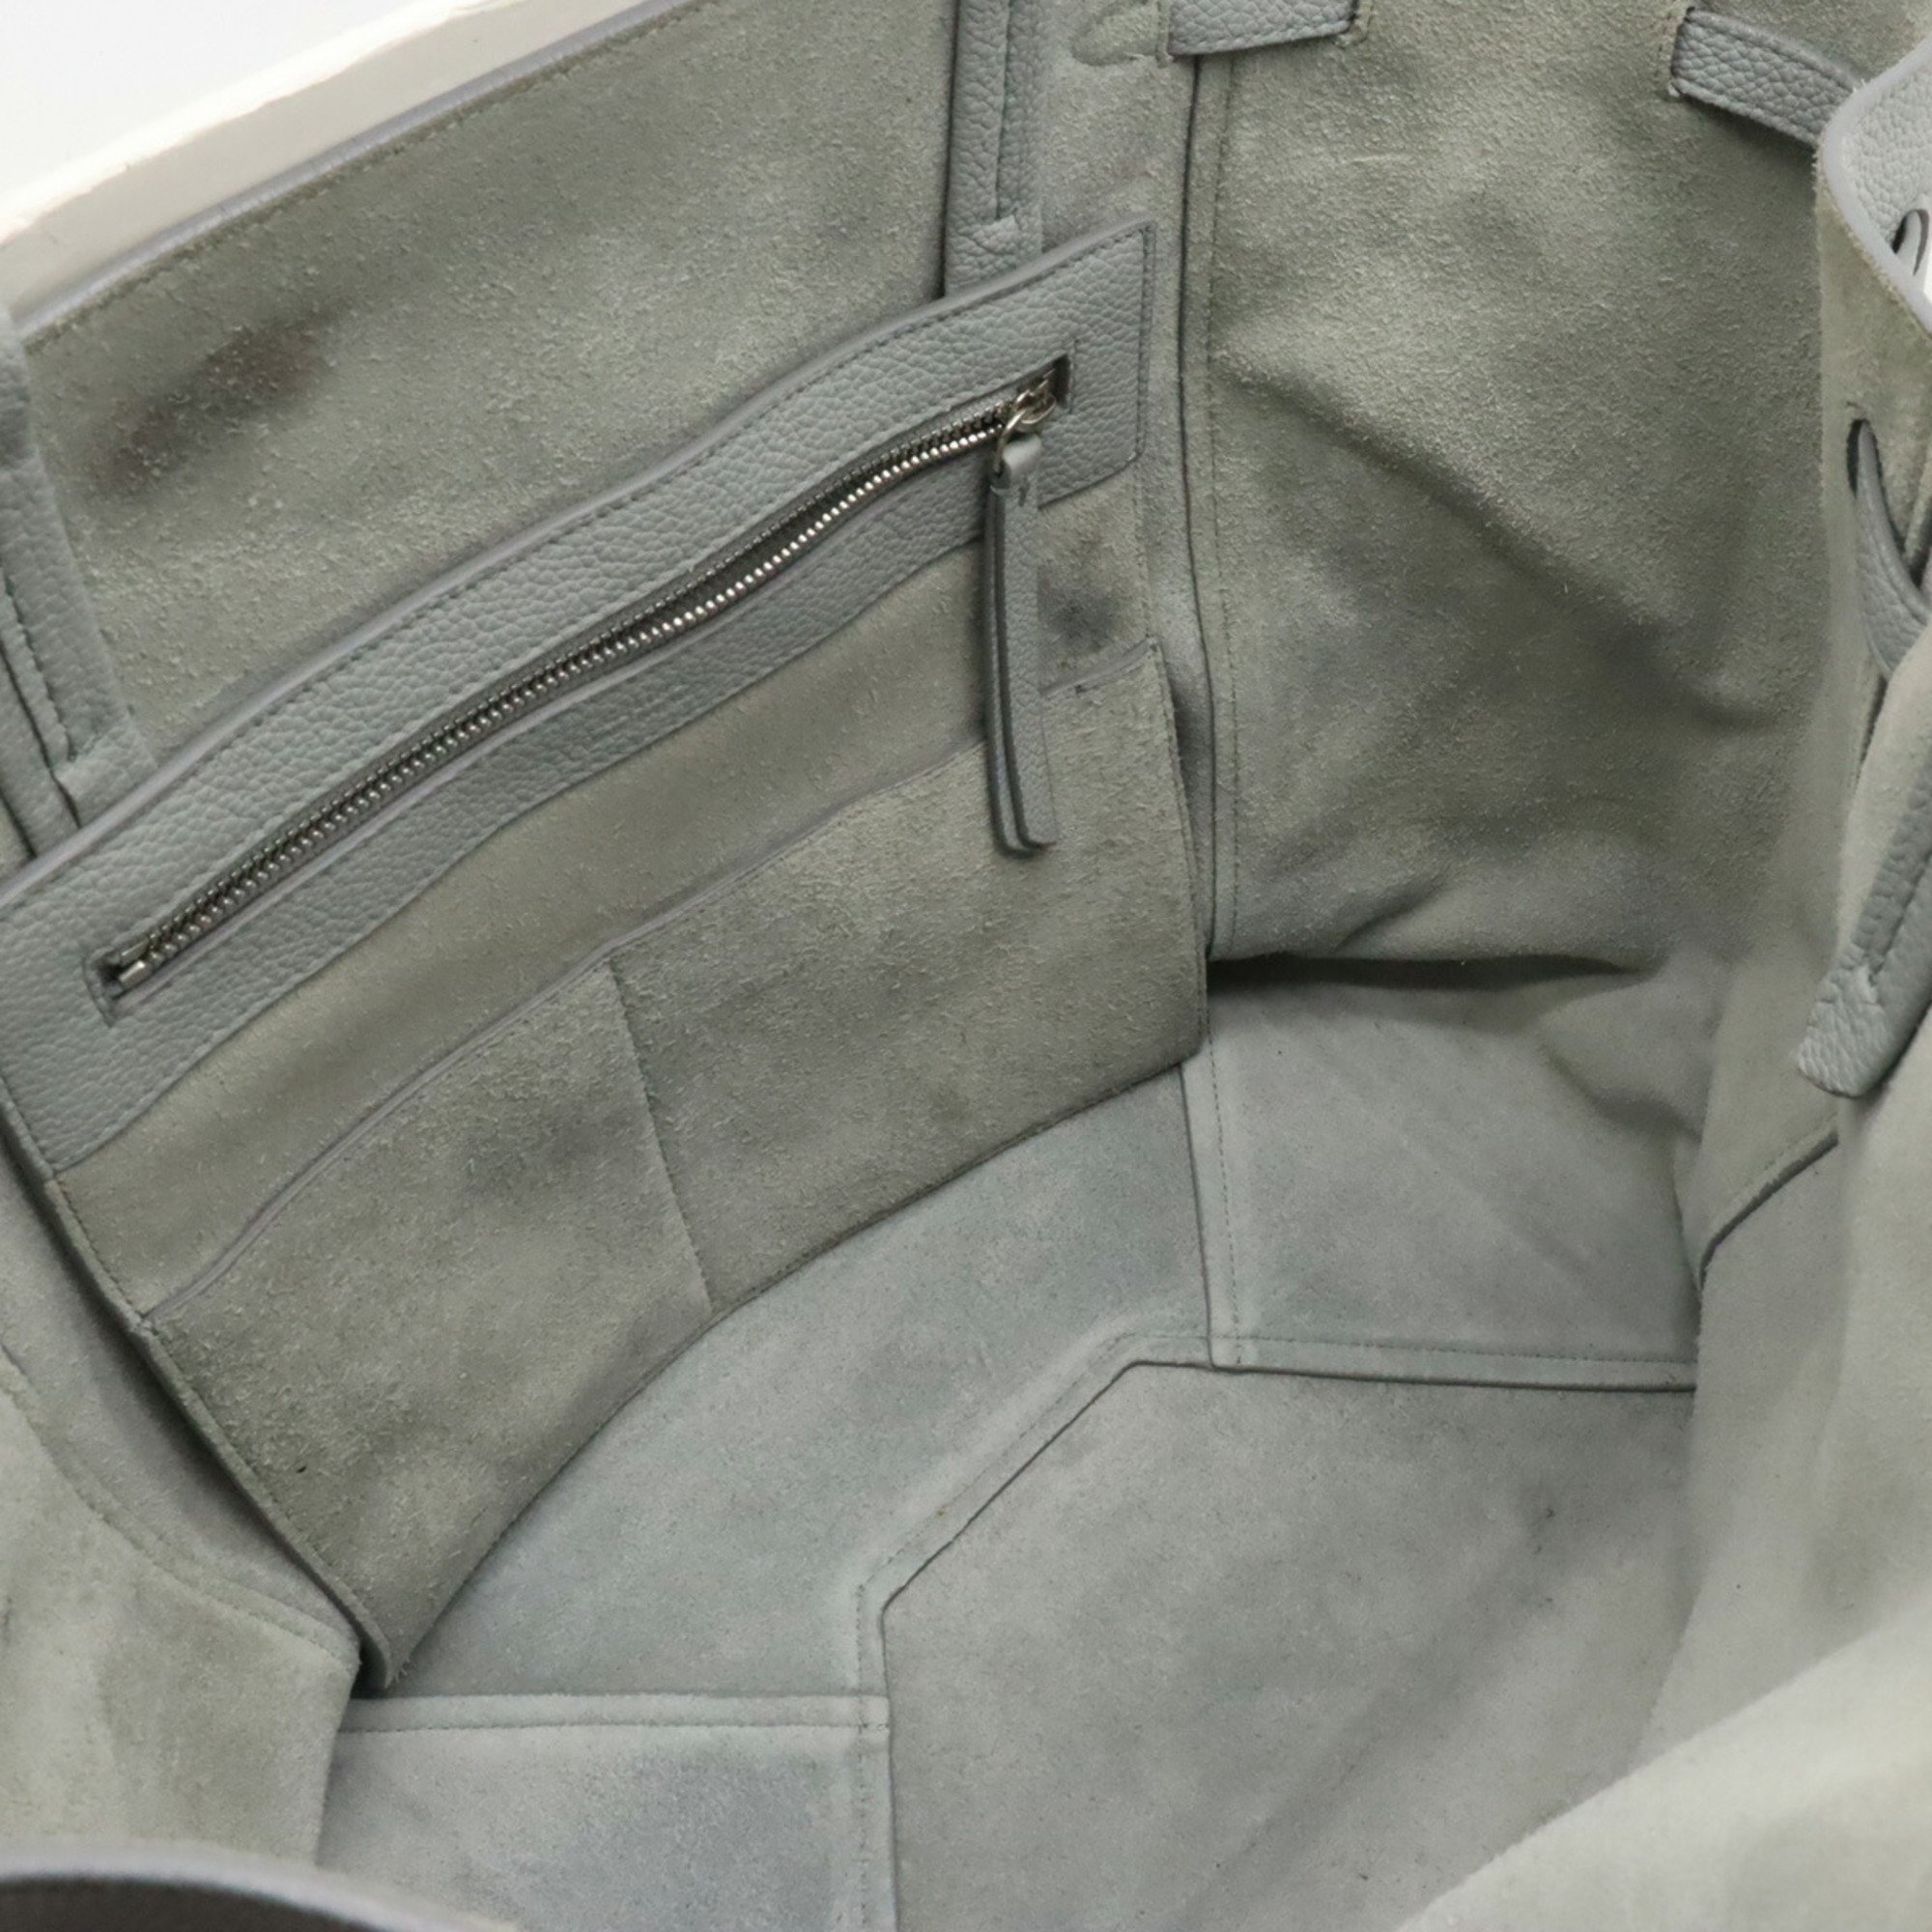 CELINE Cabas Phantom Small Belt Tote Bag Shoulder Leather Light Blue Gray 176023